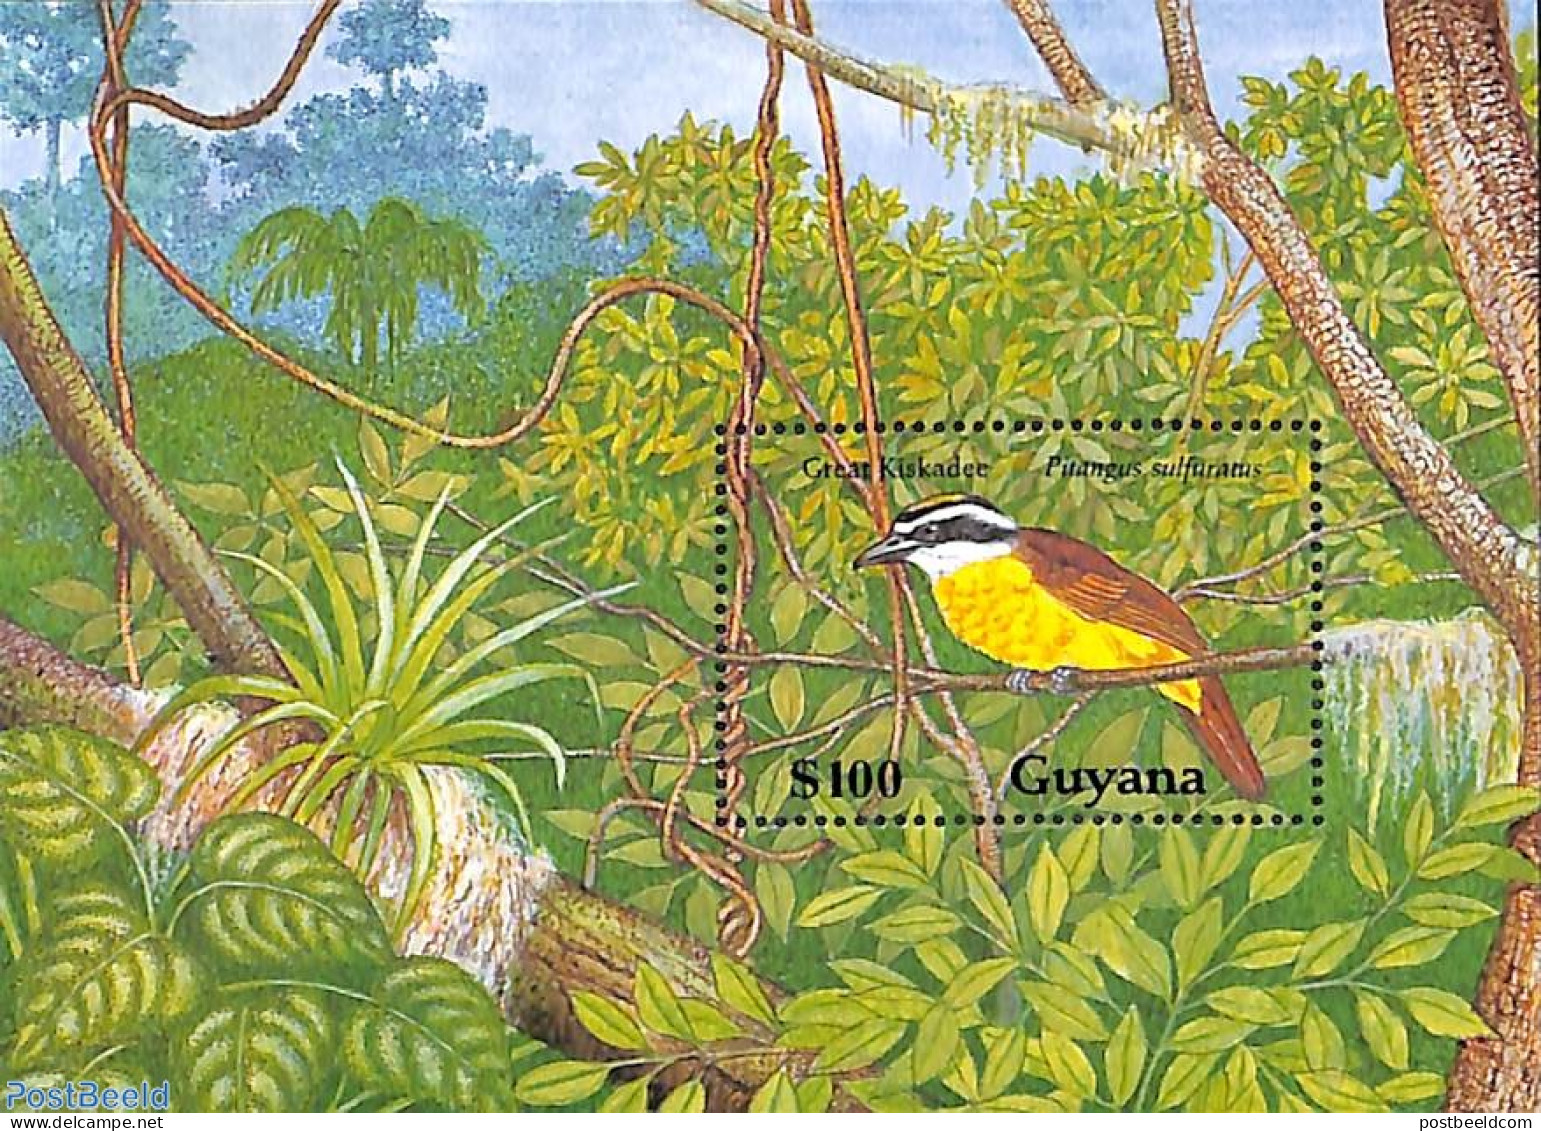 Guyana 1990 Pitangus Sulphuratus S/s, Mint NH, Nature - Birds - Guyane (1966-...)